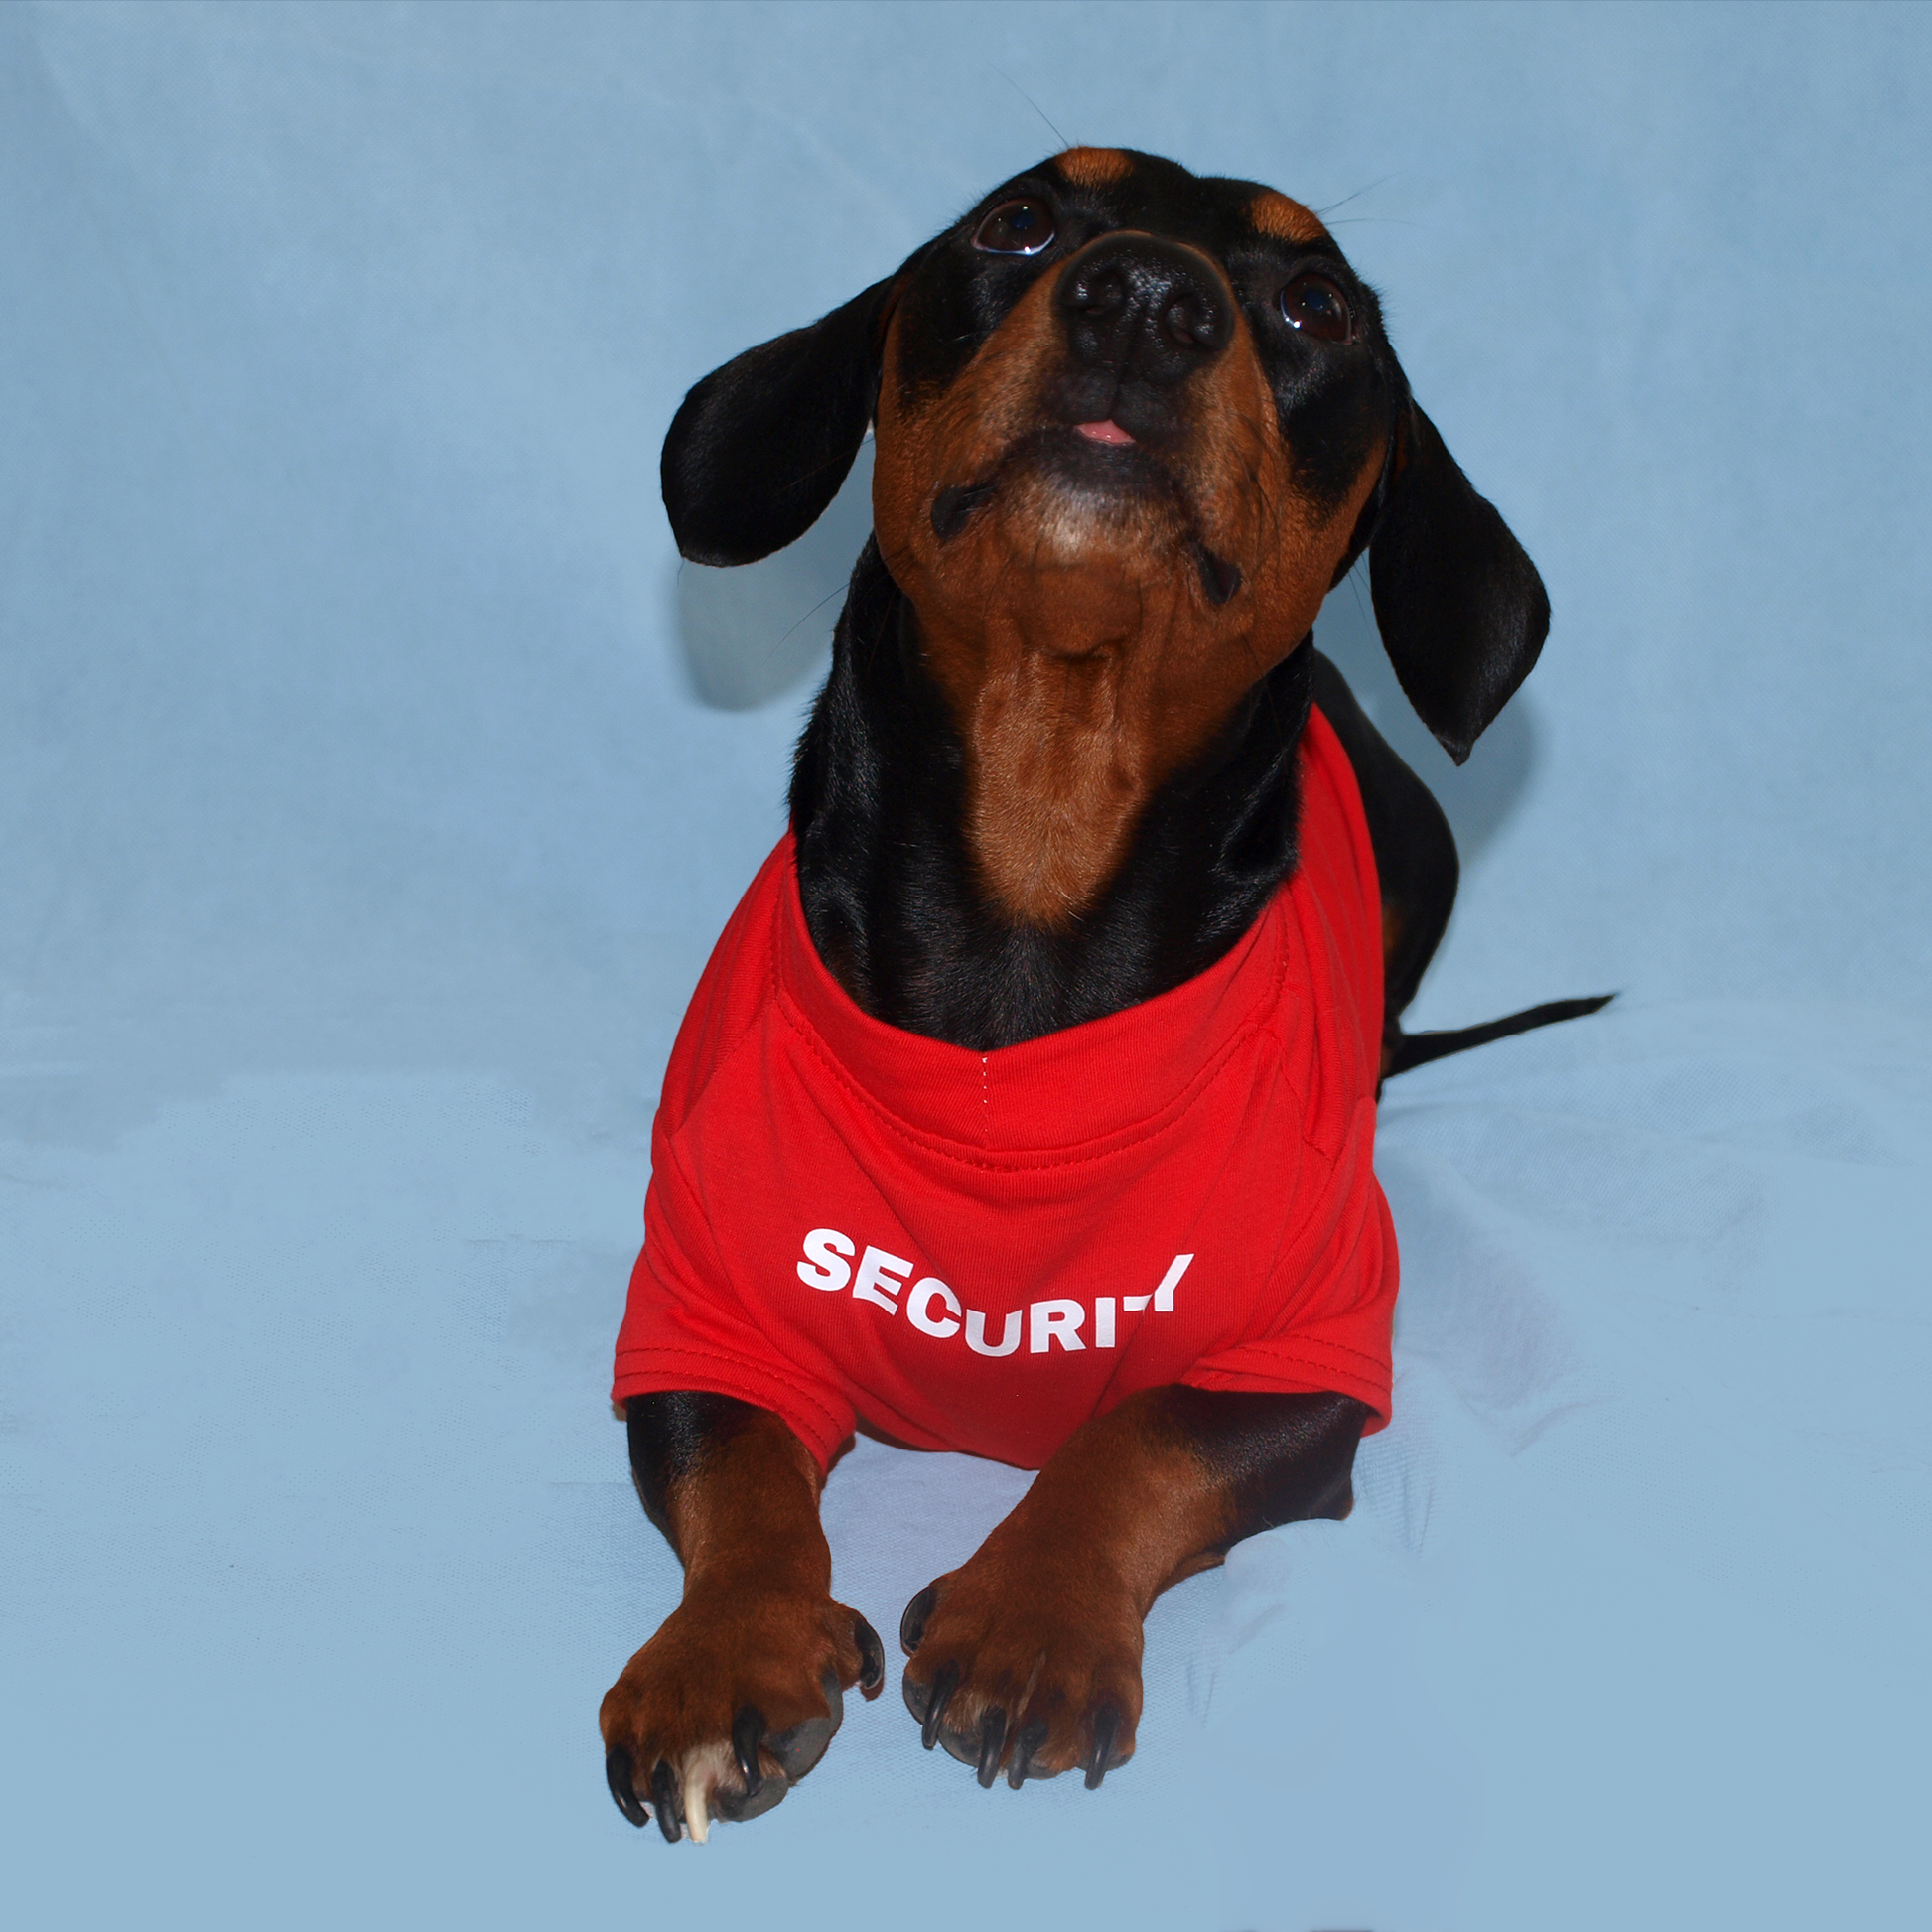 Perro salchicha con playera roja con estampado "security" en fondo azul.